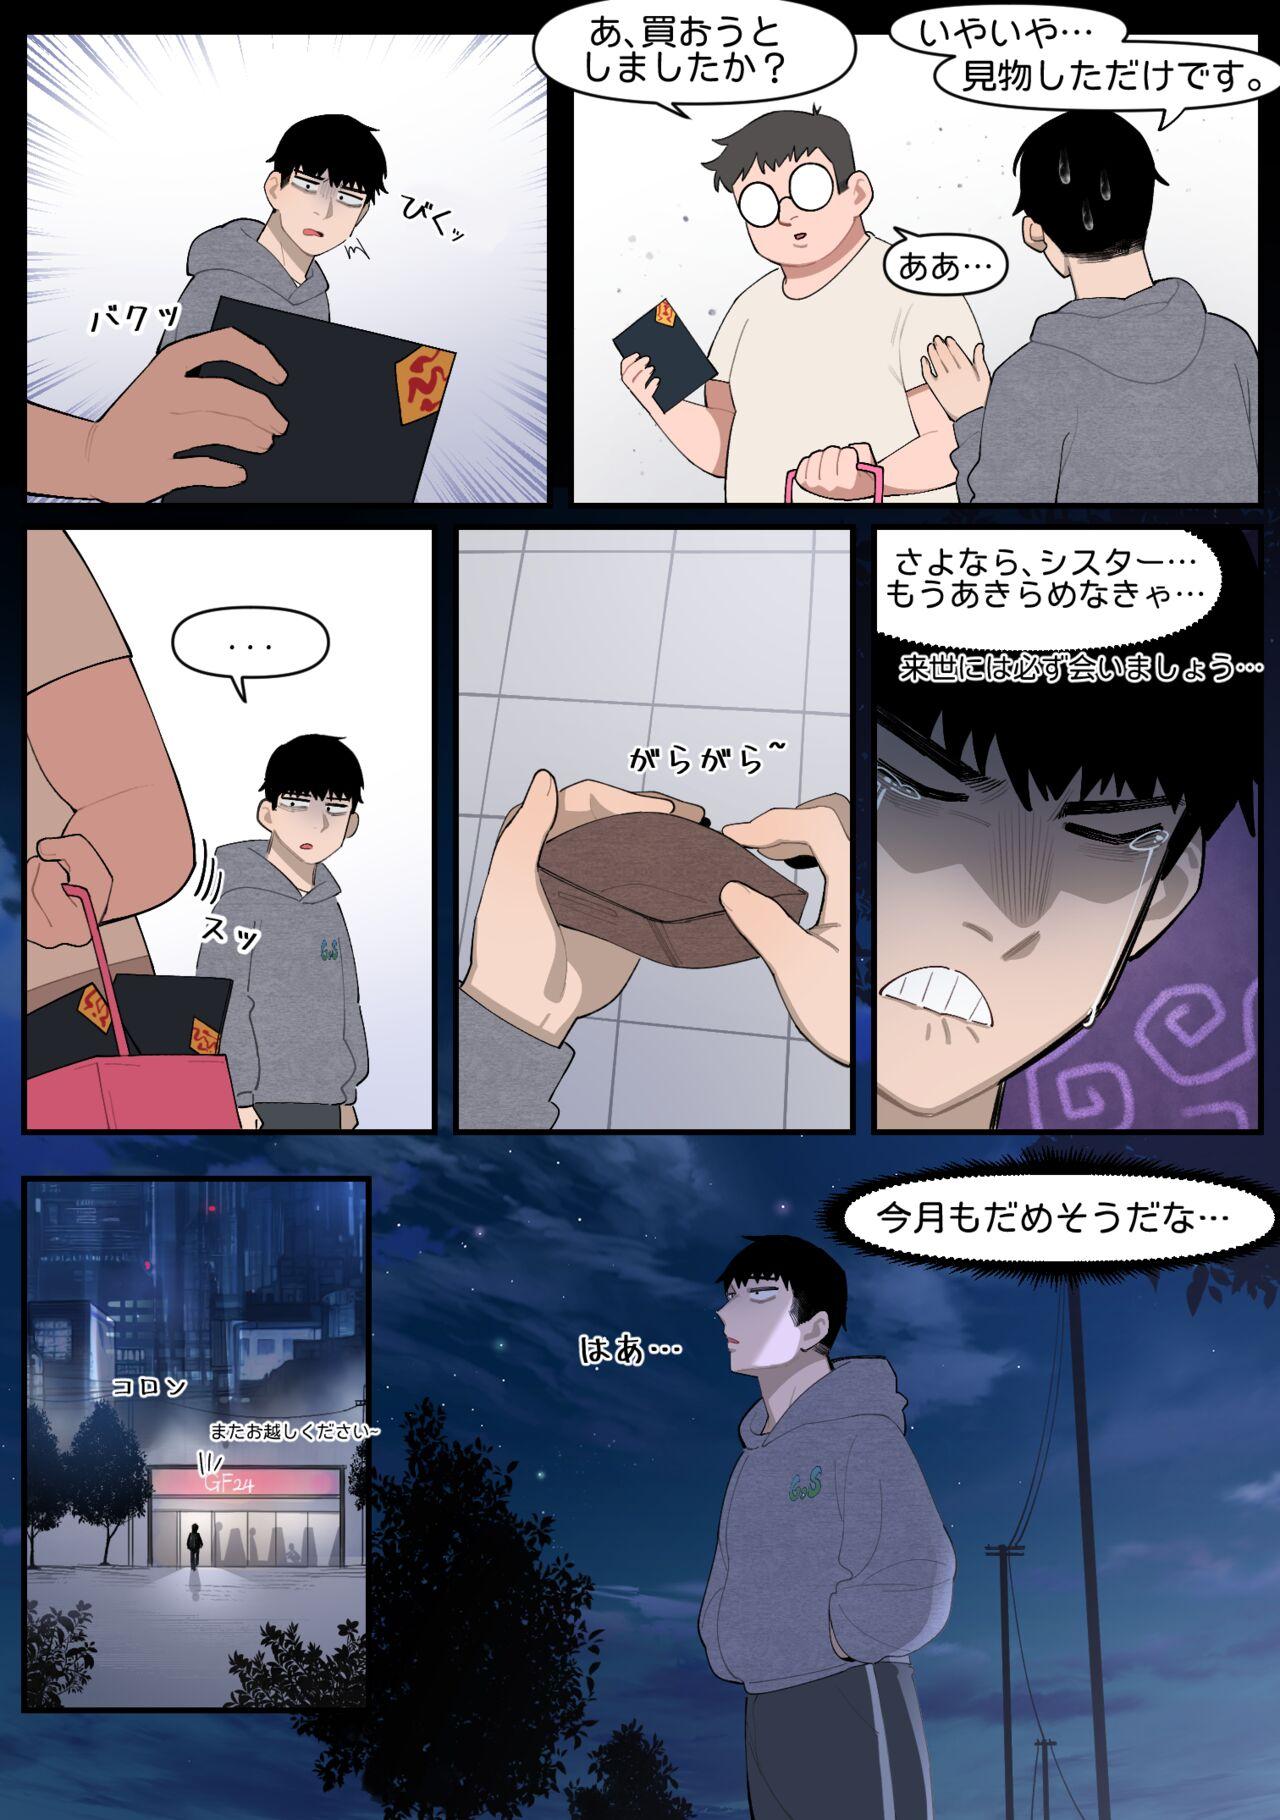 Ruiva 22.10 - Original Anime - Page 2